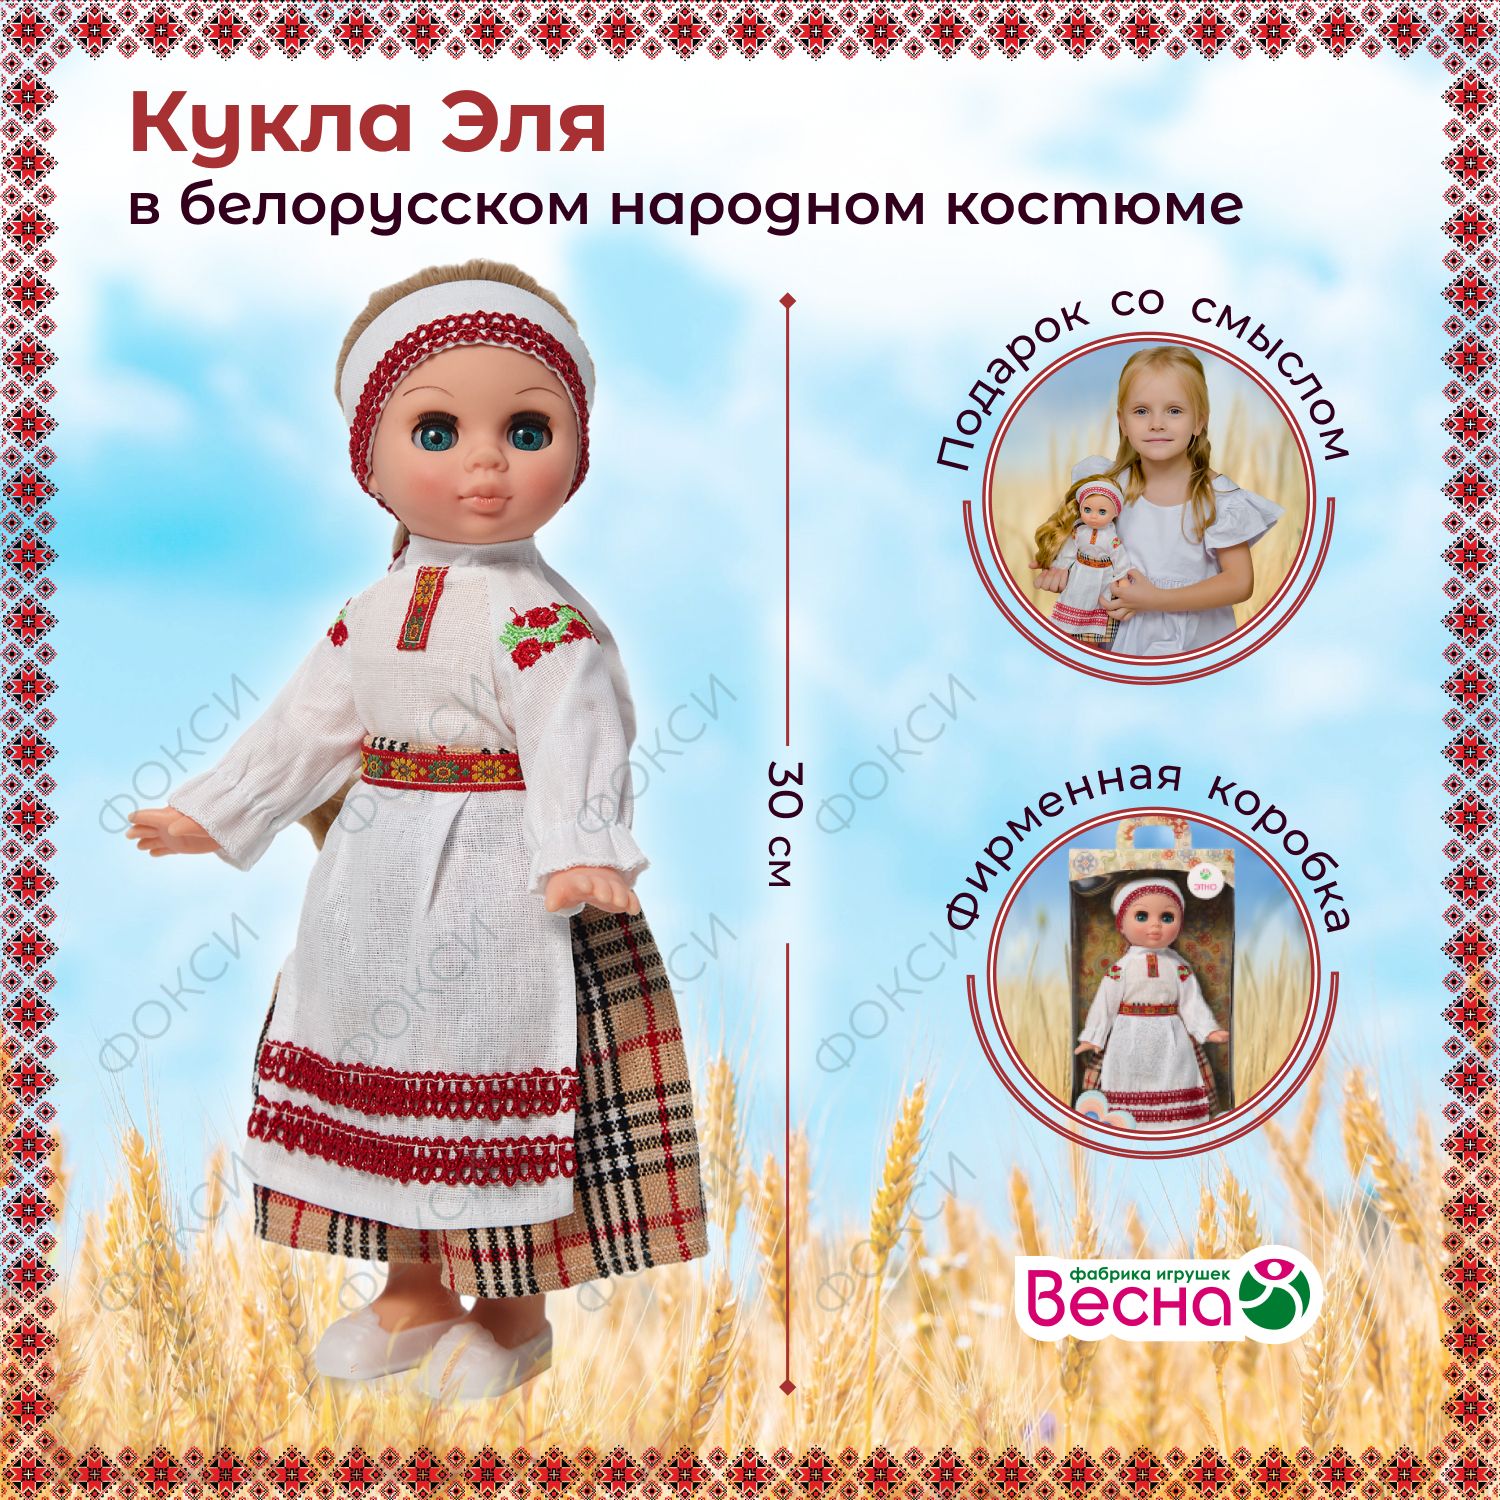 «Народы России» - разборные куклы в национальных костюмах (48 шт)